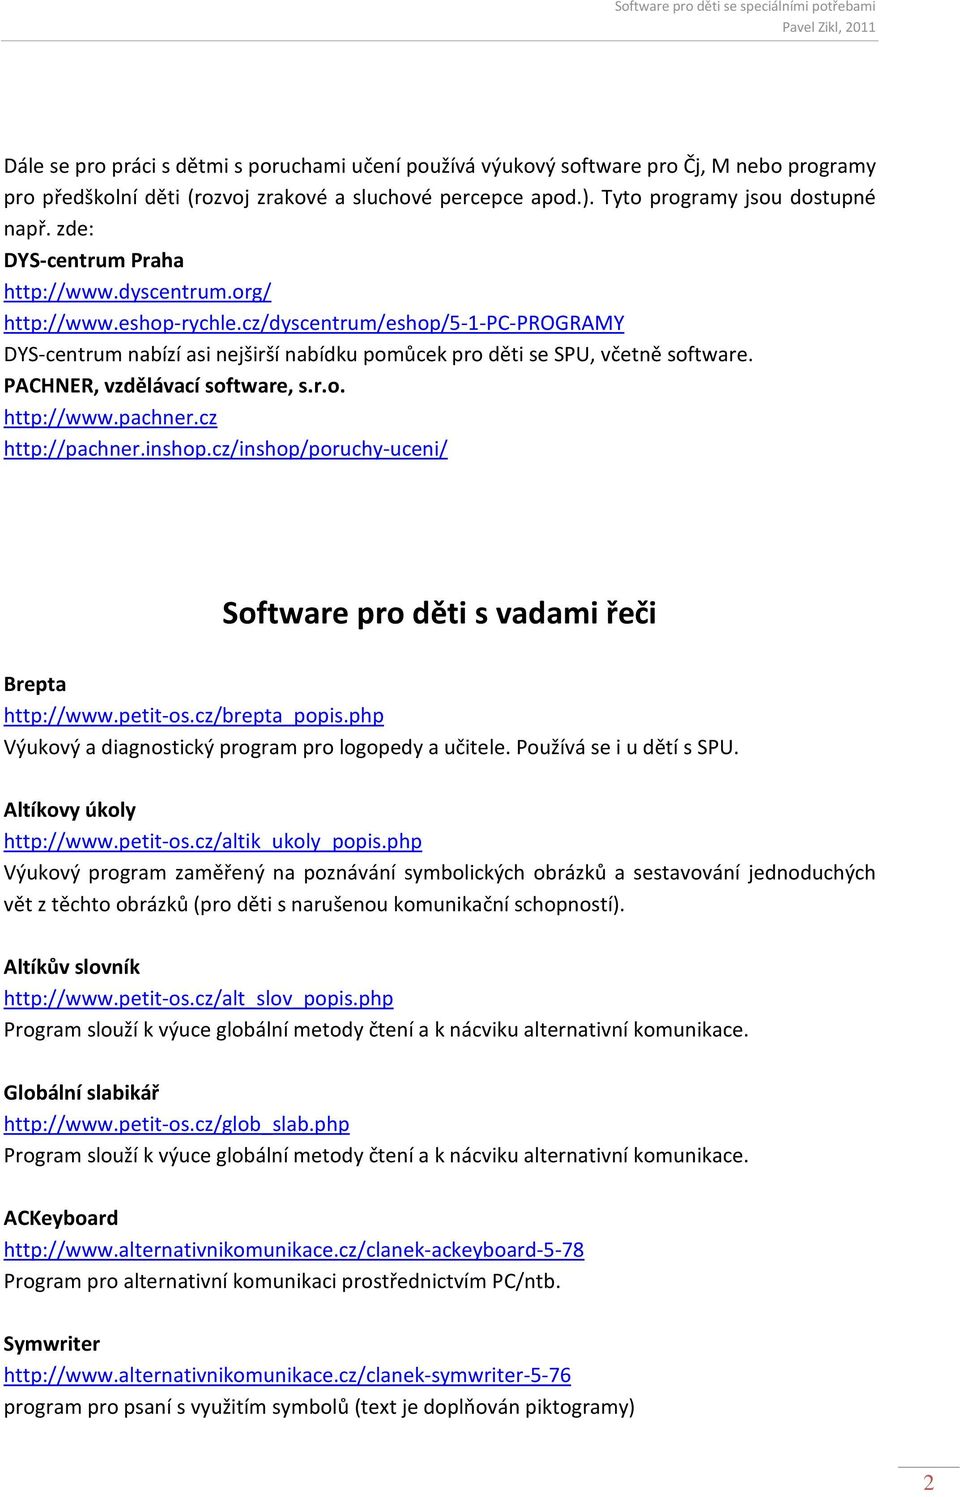 PACHNER, vzdělávací software, s.r.o. http://www.pachner.cz http://pachner.inshop.cz/inshop/poruchy-uceni/ Software pro děti s vadami řeči Brepta http://www.petit-os.cz/brepta_popis.